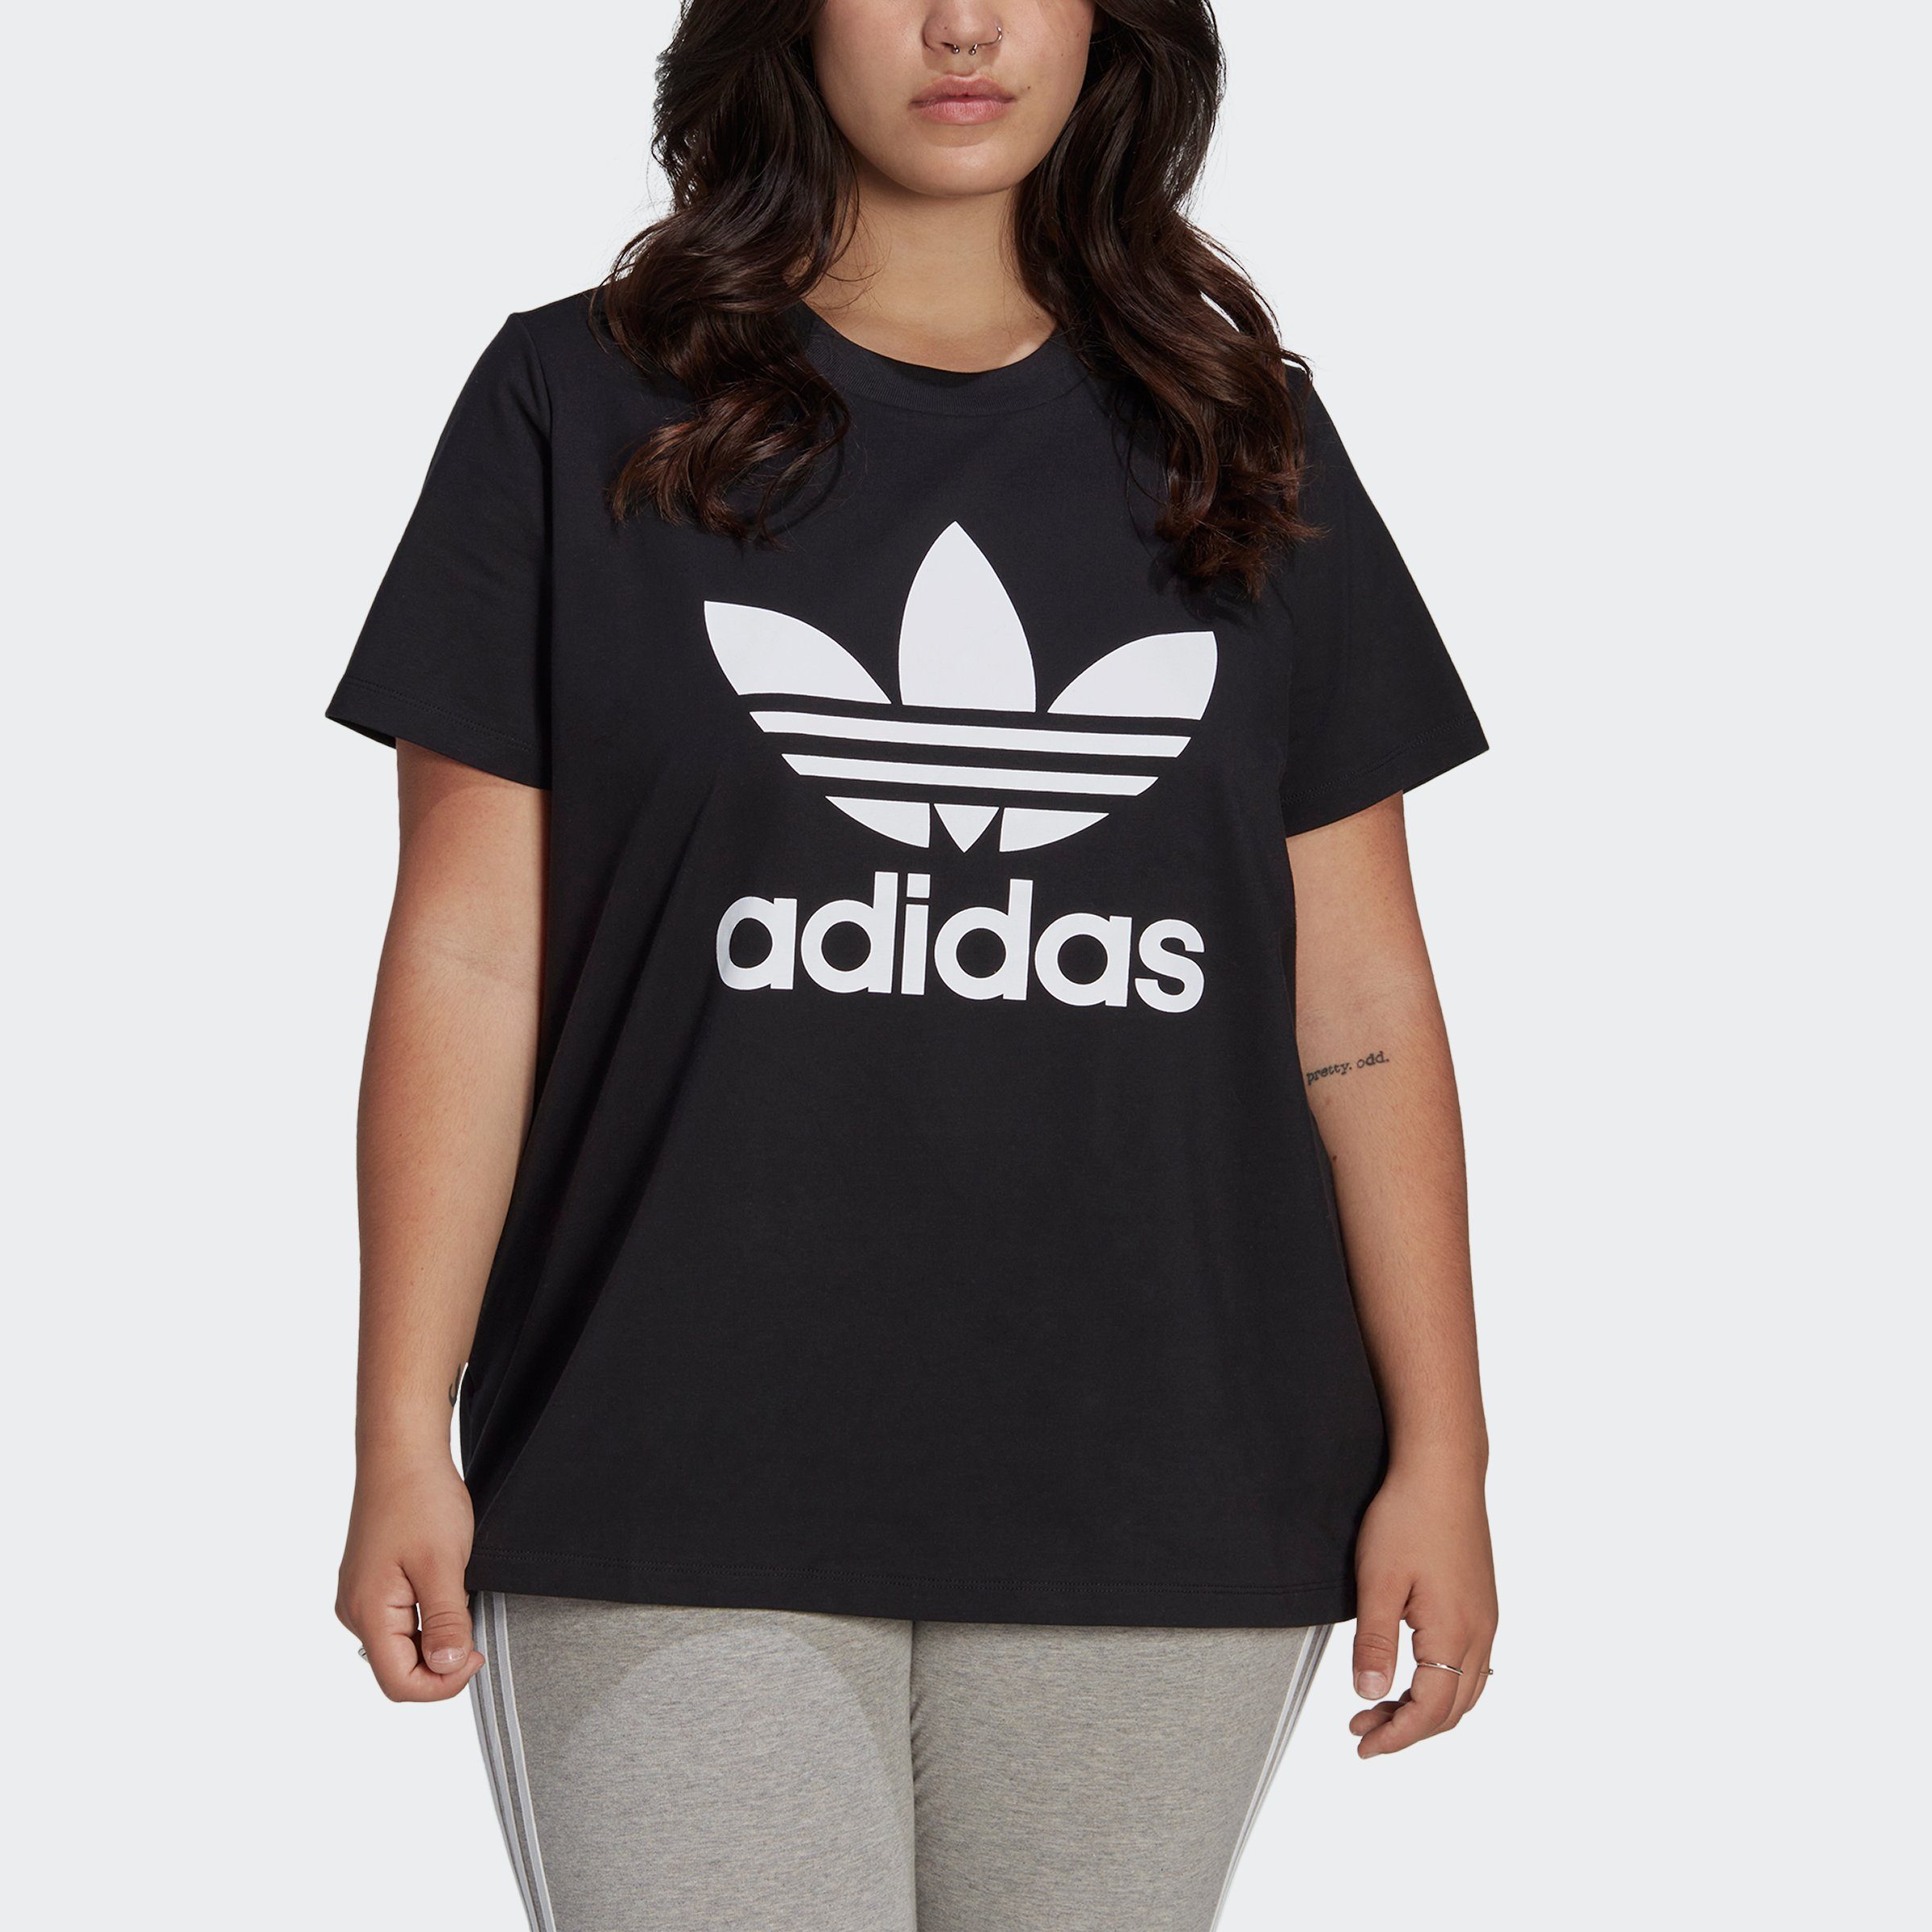 adidas Originals T-Shirt ADICOLOR CLASSICS gute weiche TREFOIL Baumwollshirt GRÖSSEN, Dieses für Tag – GROSSE sorgt jeden